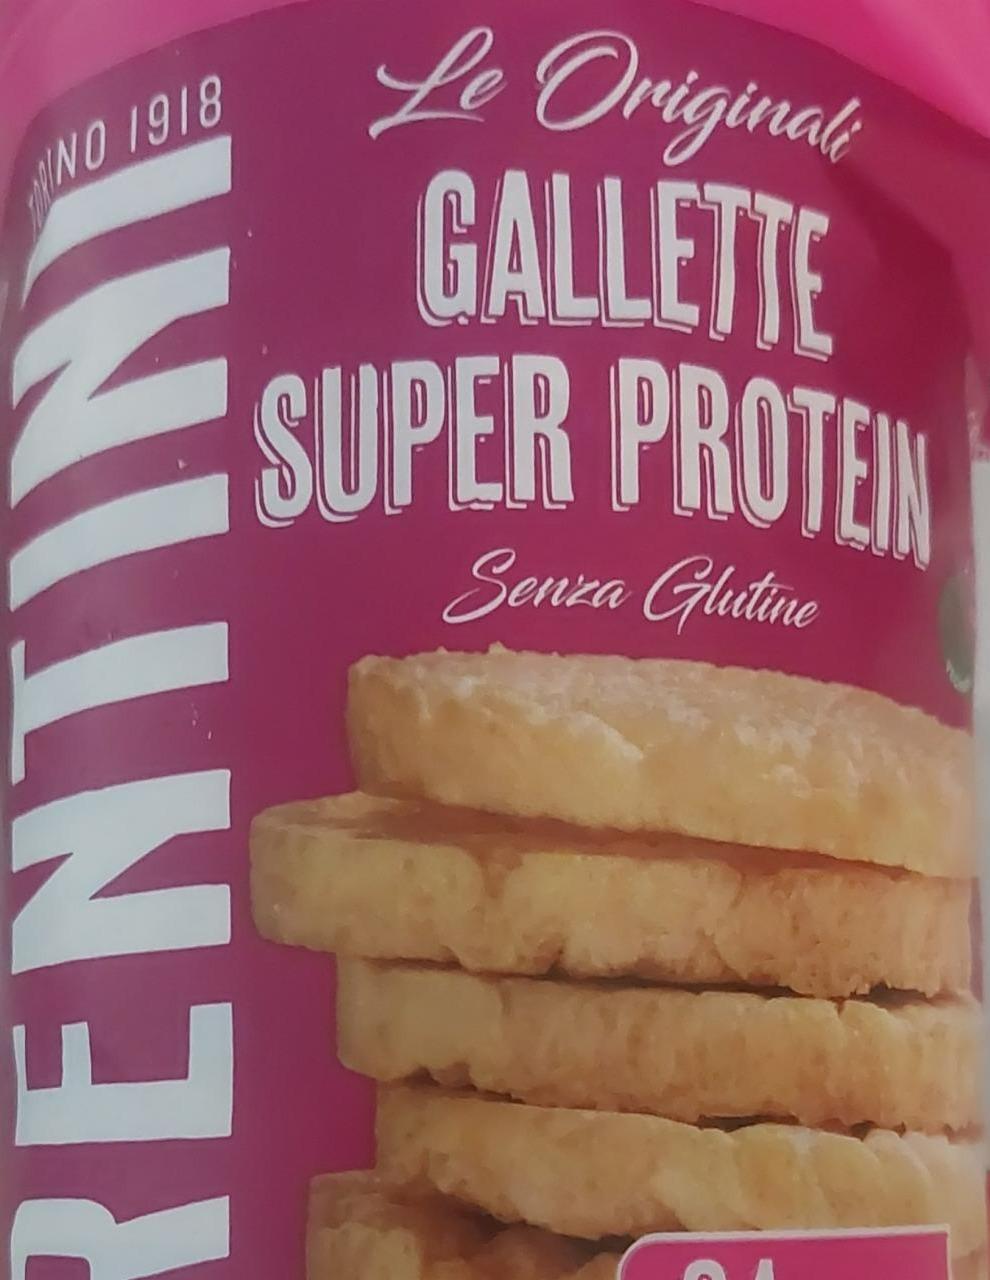 Fotografie - Le Original Gallette Super Protein Fiorentini